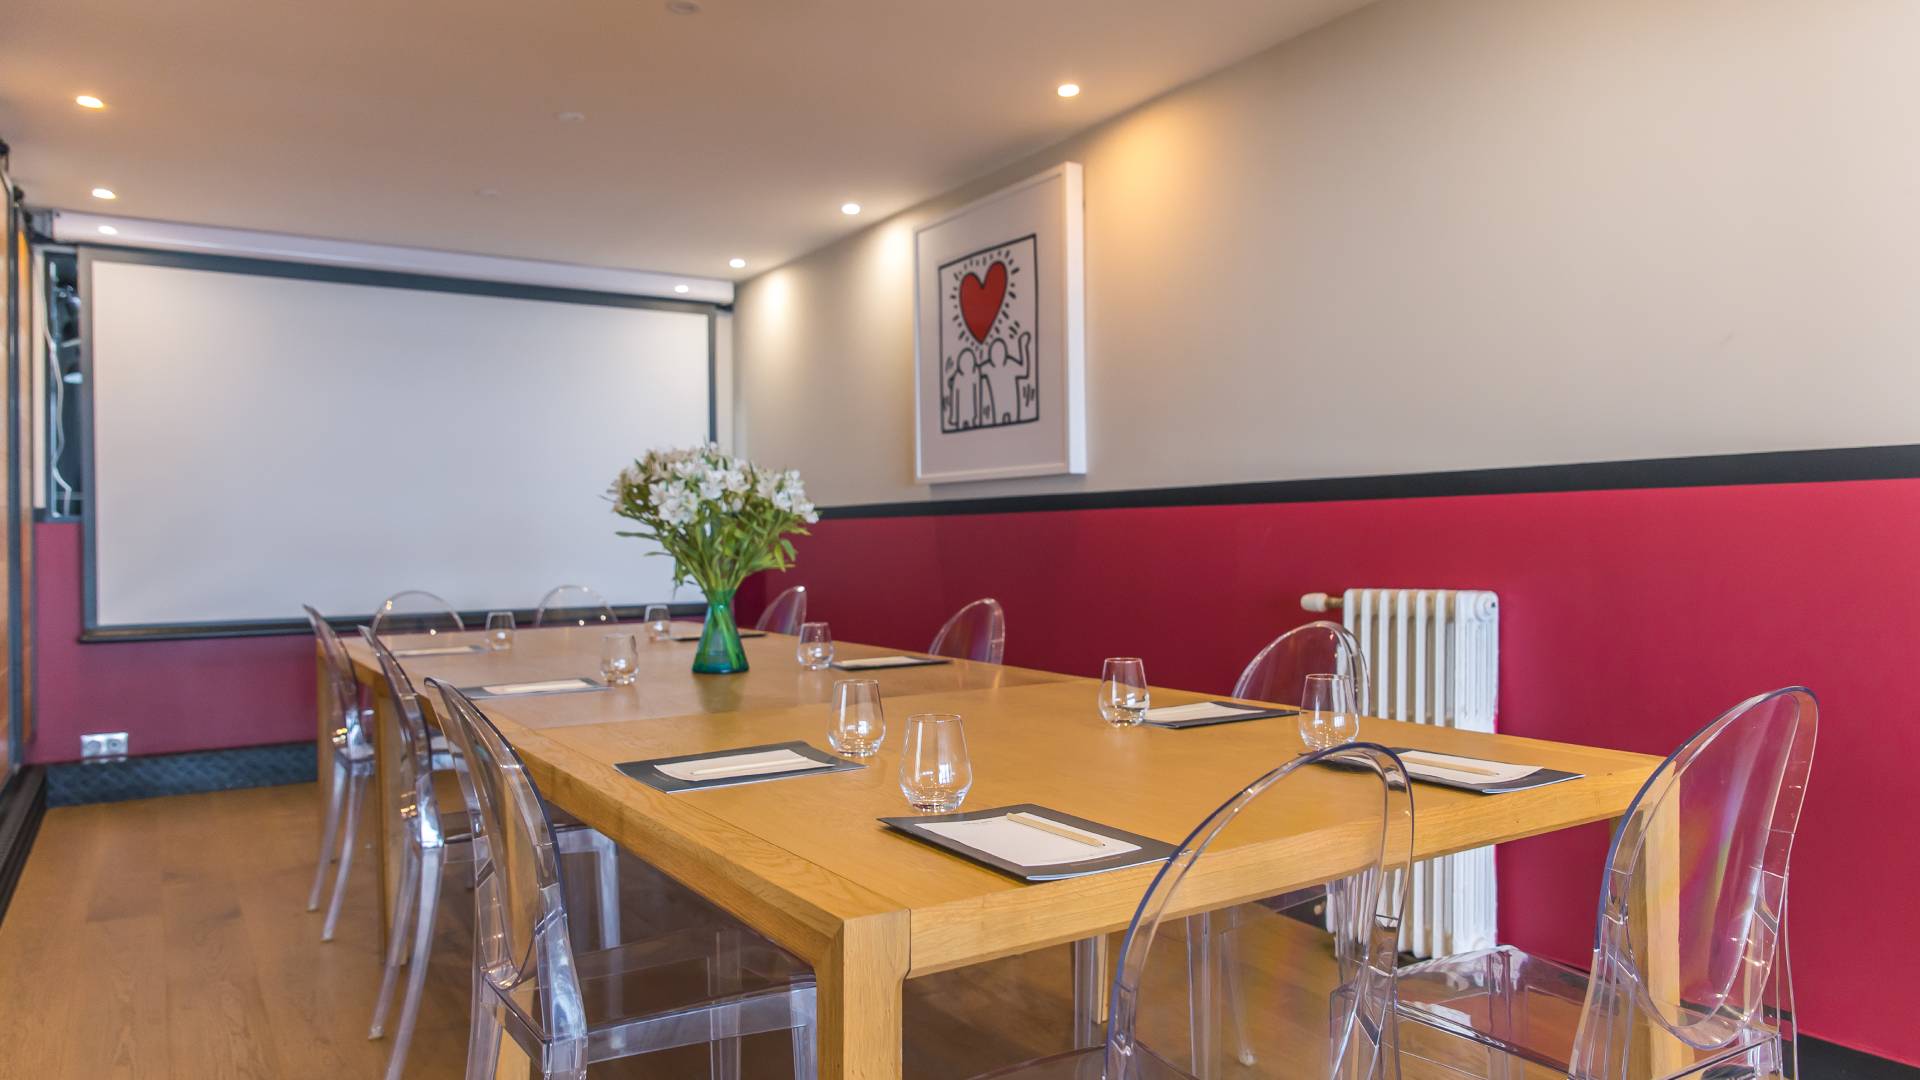 salle réunion avec mur rouge et décoration art moderne - seminaire bretagne